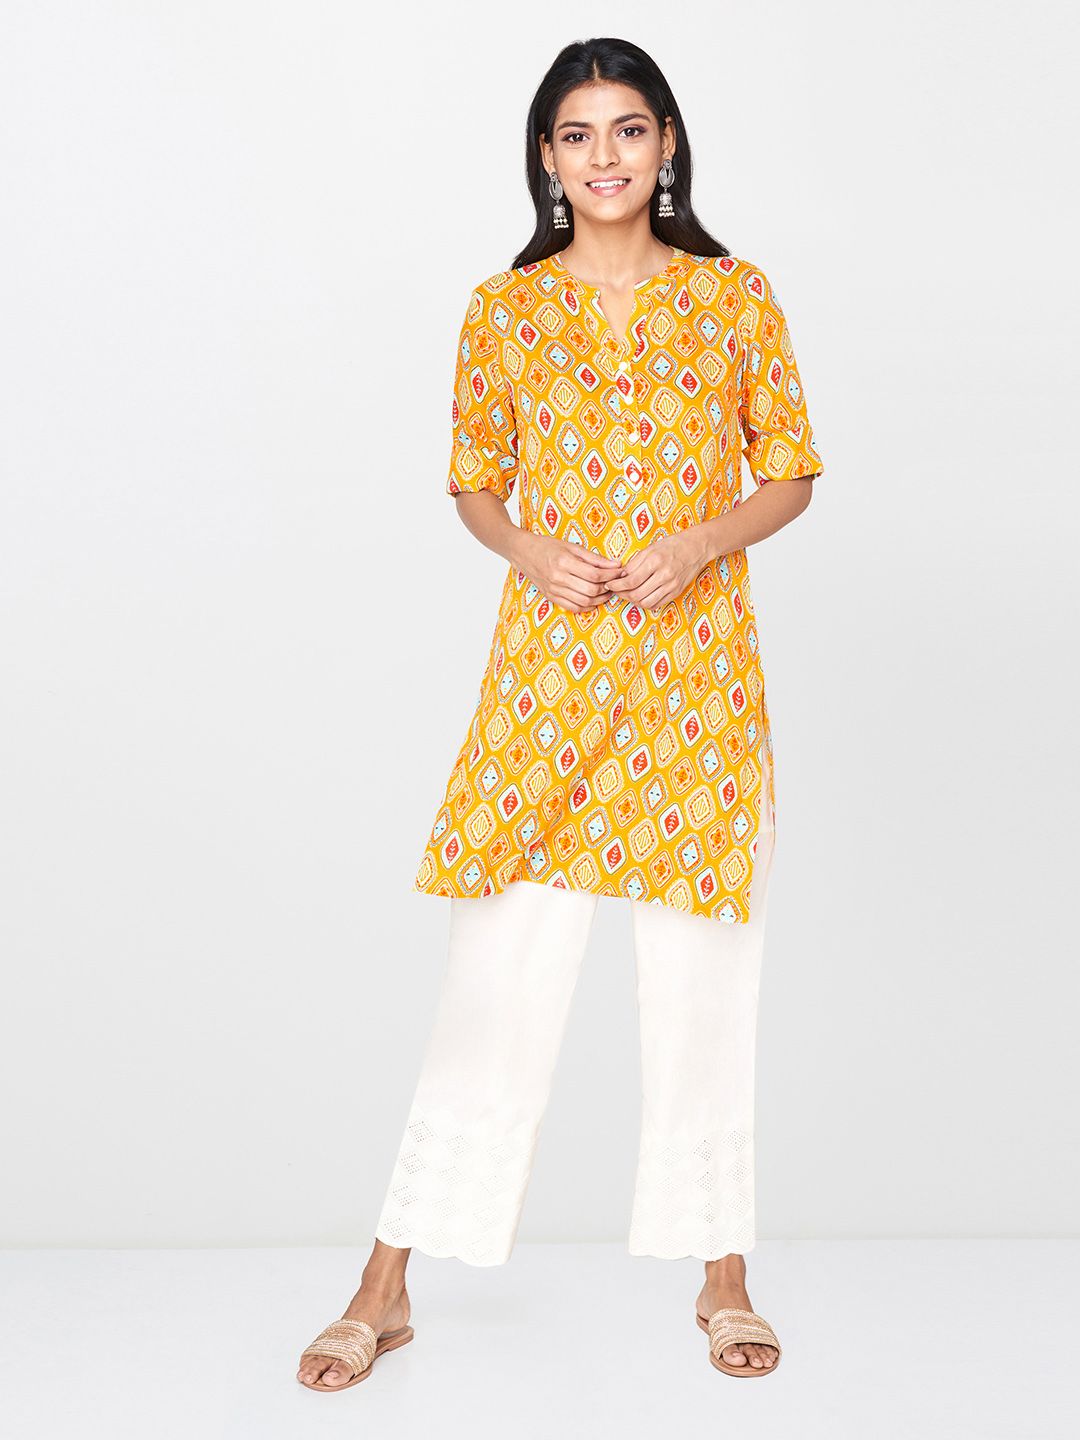 Global Desi Women's Mustard Yellow & Red Printed Tunic Price in India